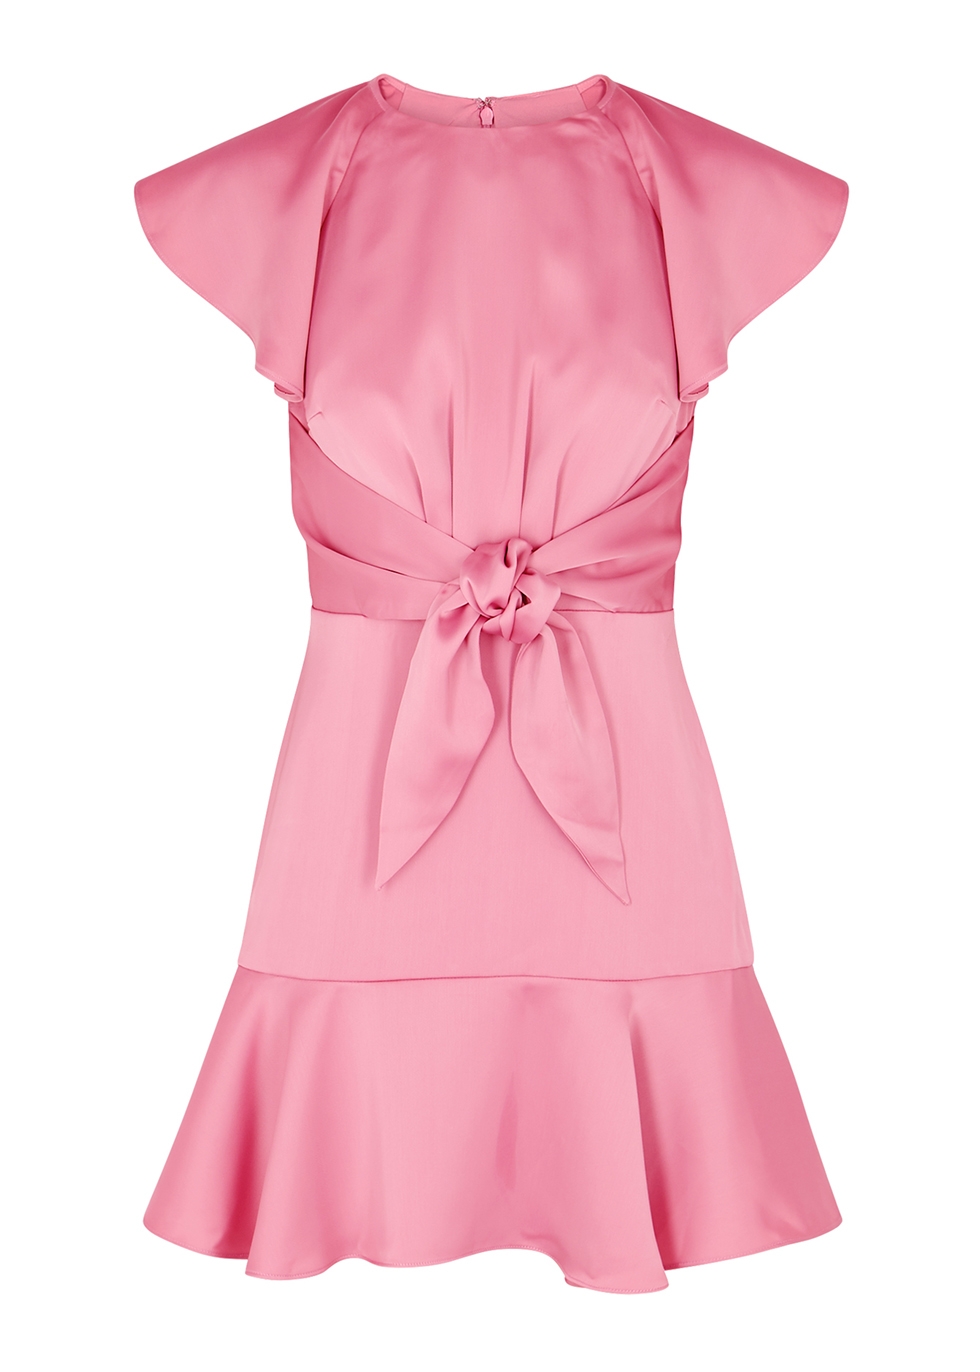 KEEPSAKE Restore pink satin mini dress - Harvey Nichols